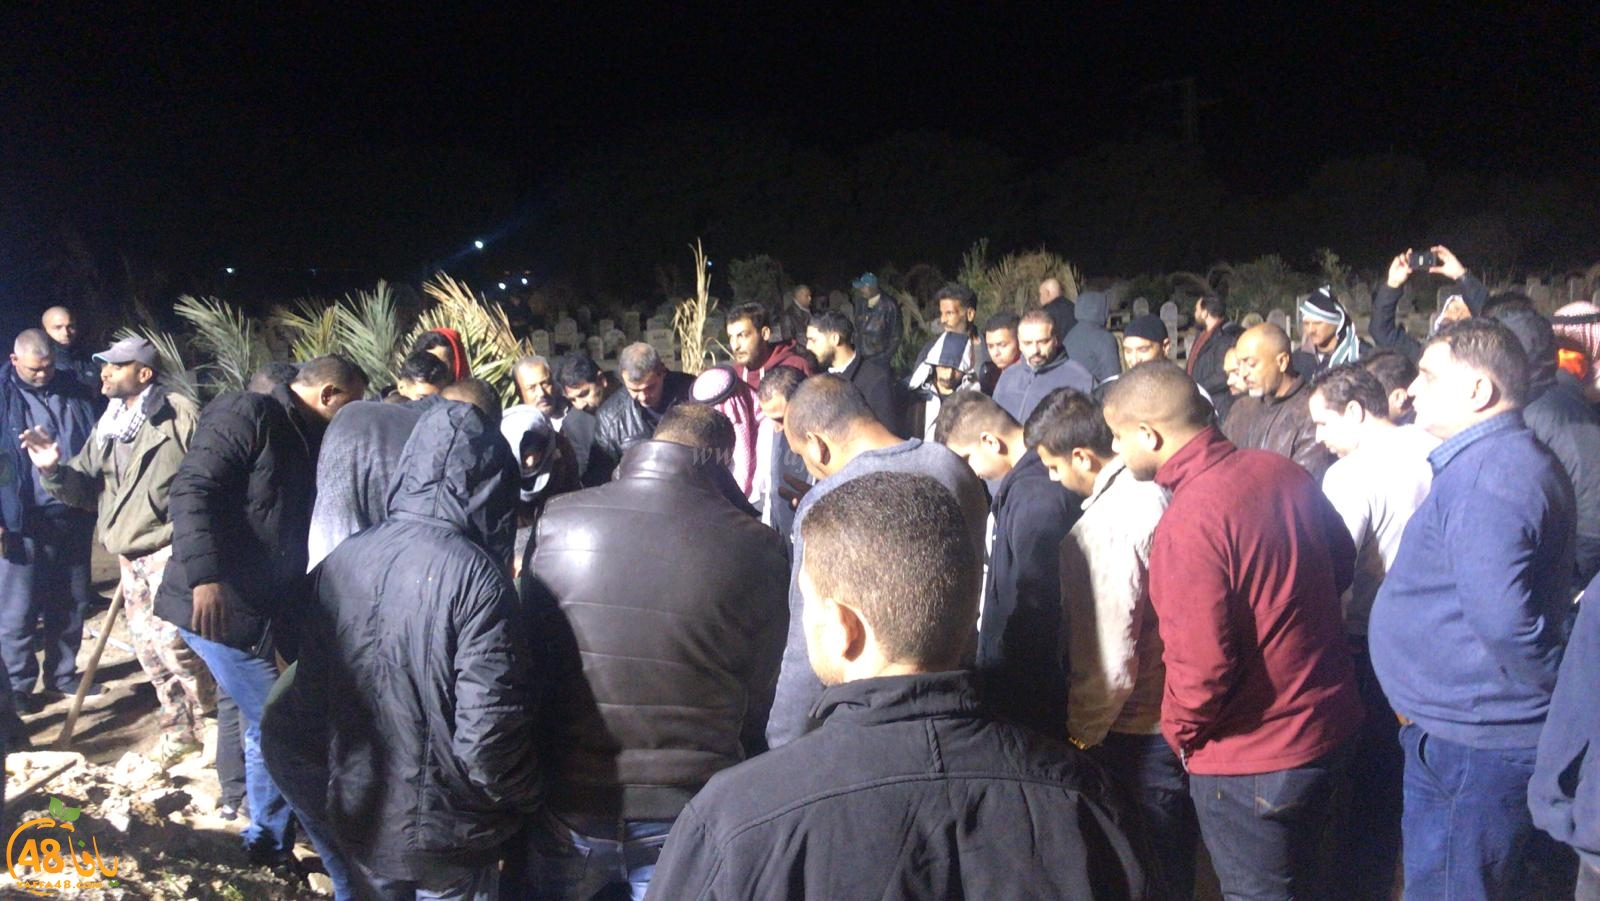  فيديو: لجنة اكرام الميت بيافا تنقل جثمان عصام جعفري لدفنه في أريحا 